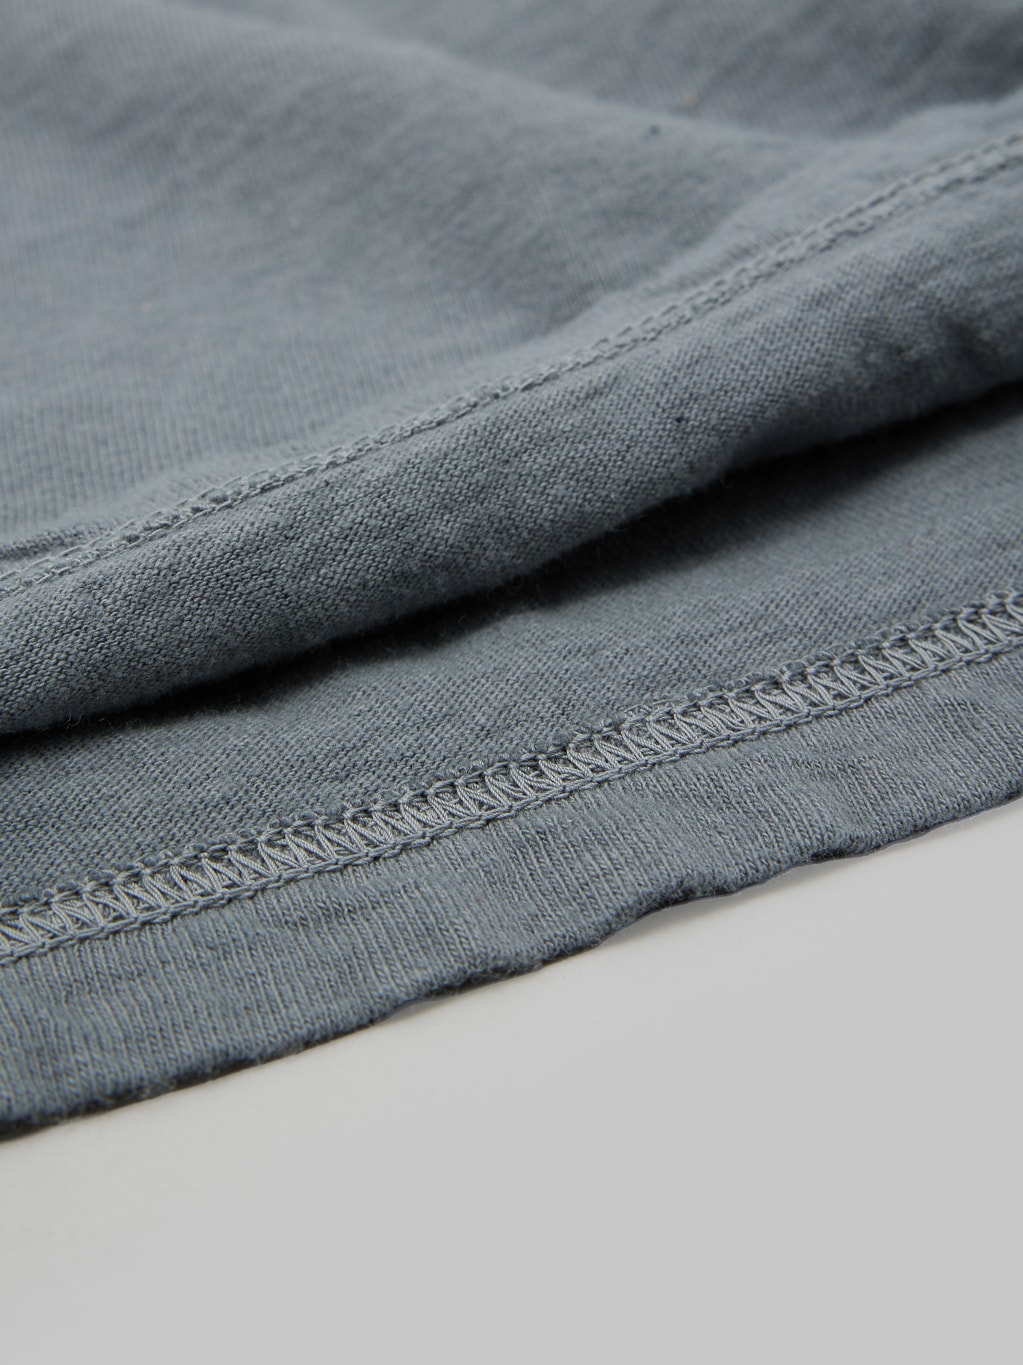 ues logo tshirt grey slim fit vintage interior fabric